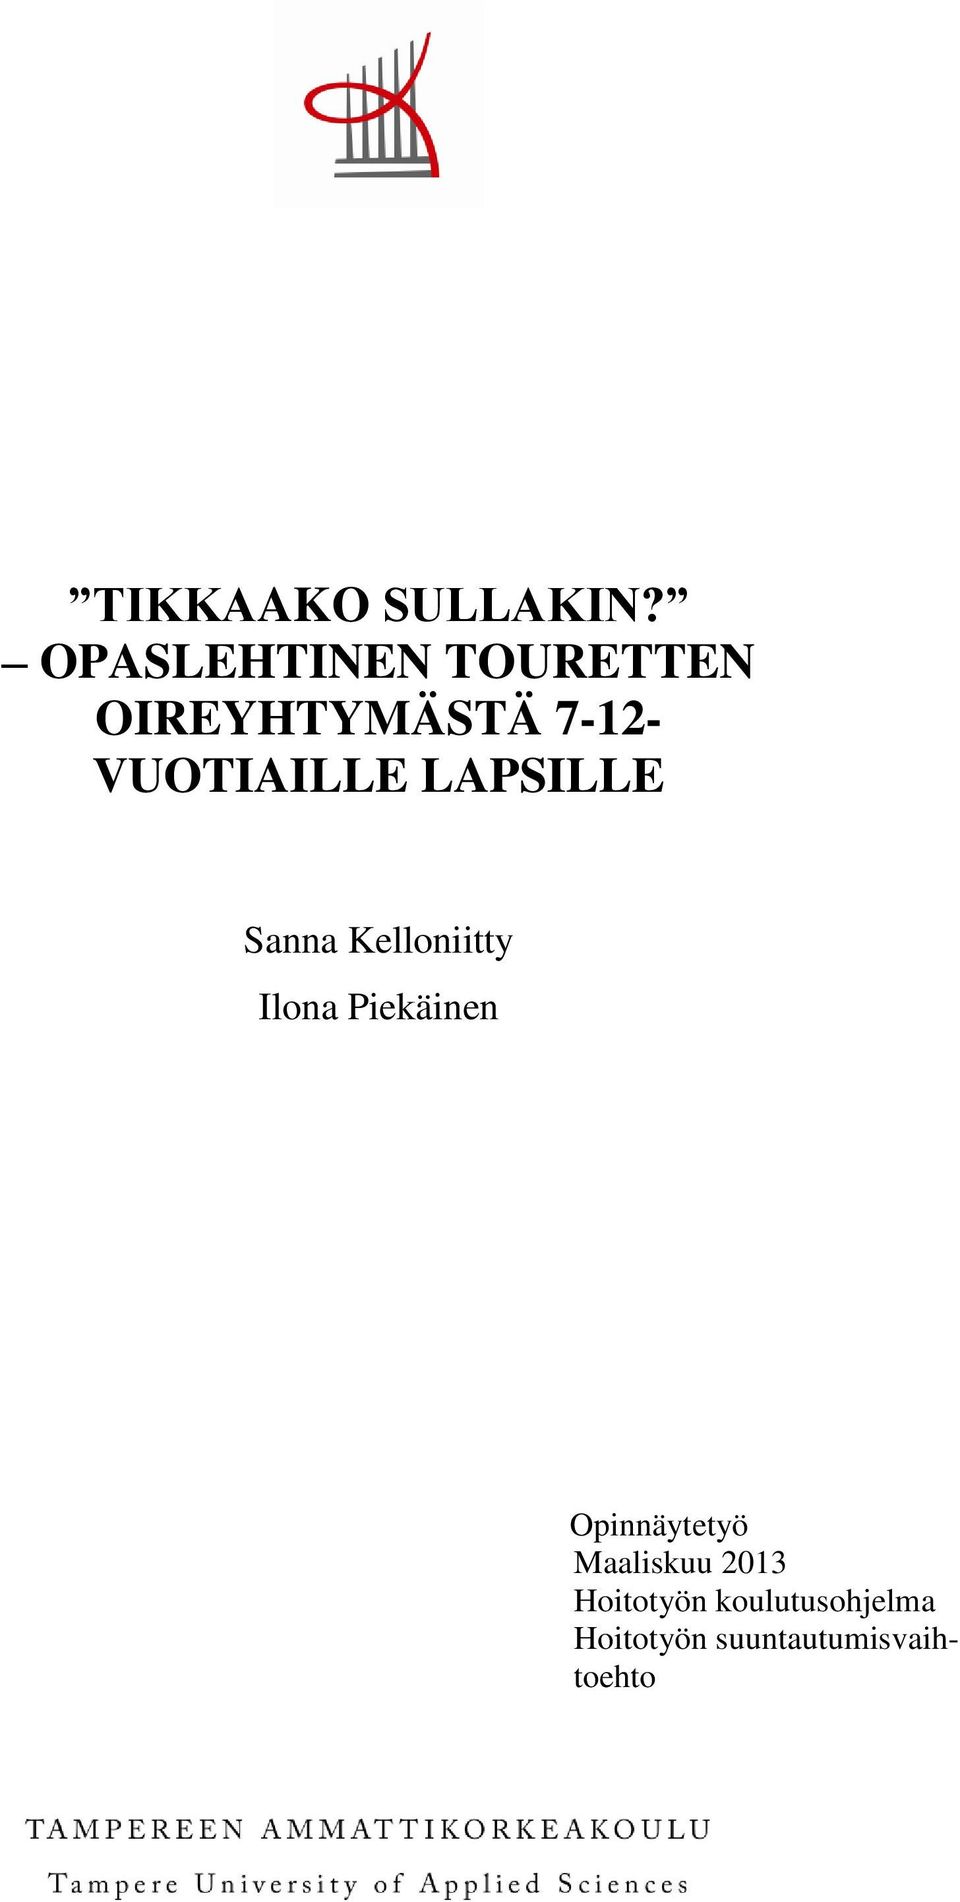 VUOTIAILLE LAPSILLE Sanna Kelloniitty Ilona